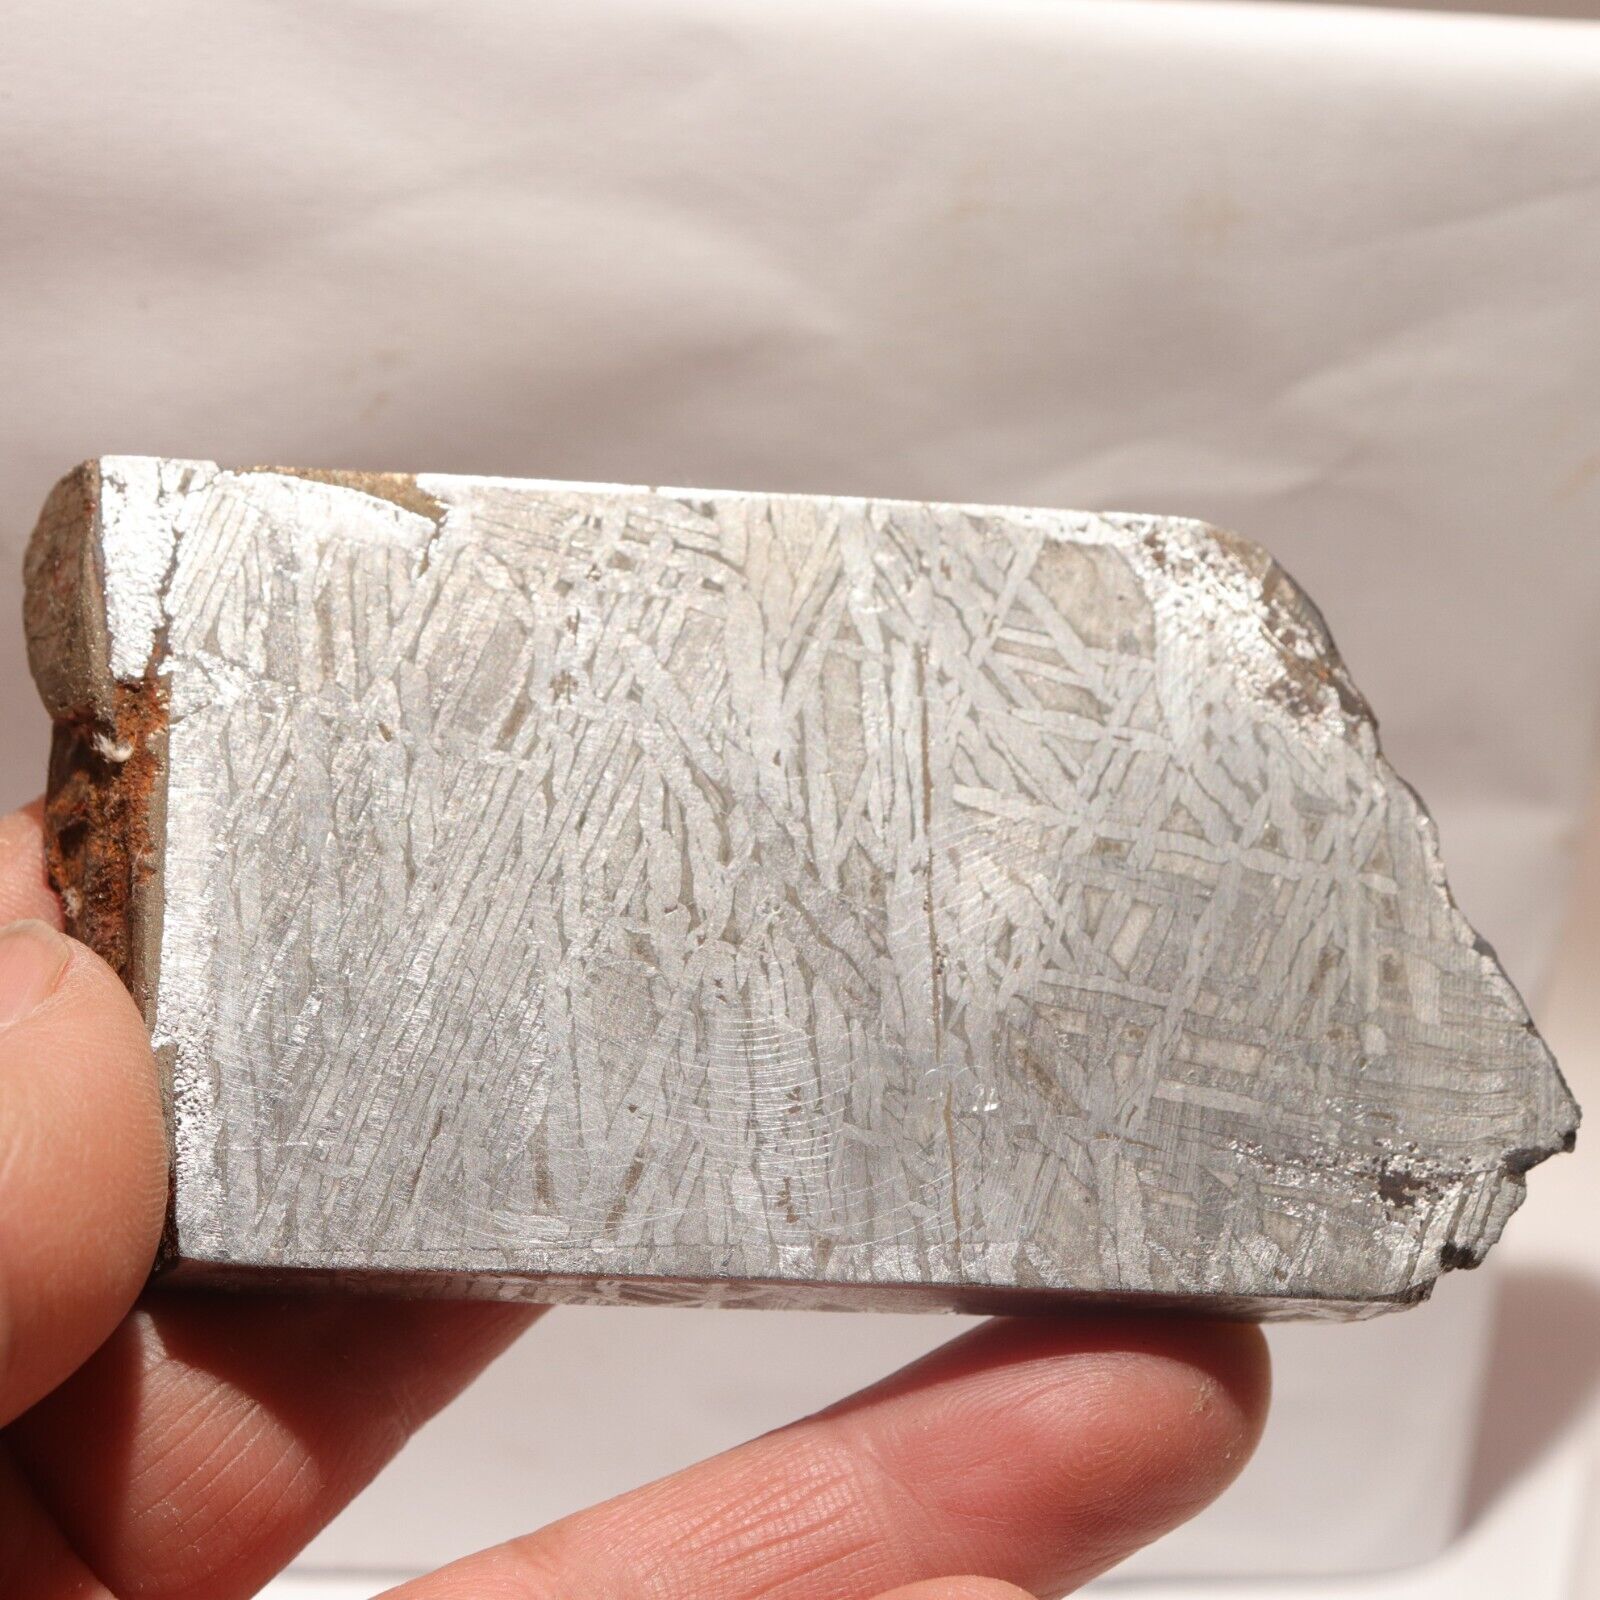 172g  Muonionalusta meteorite part slice  A173